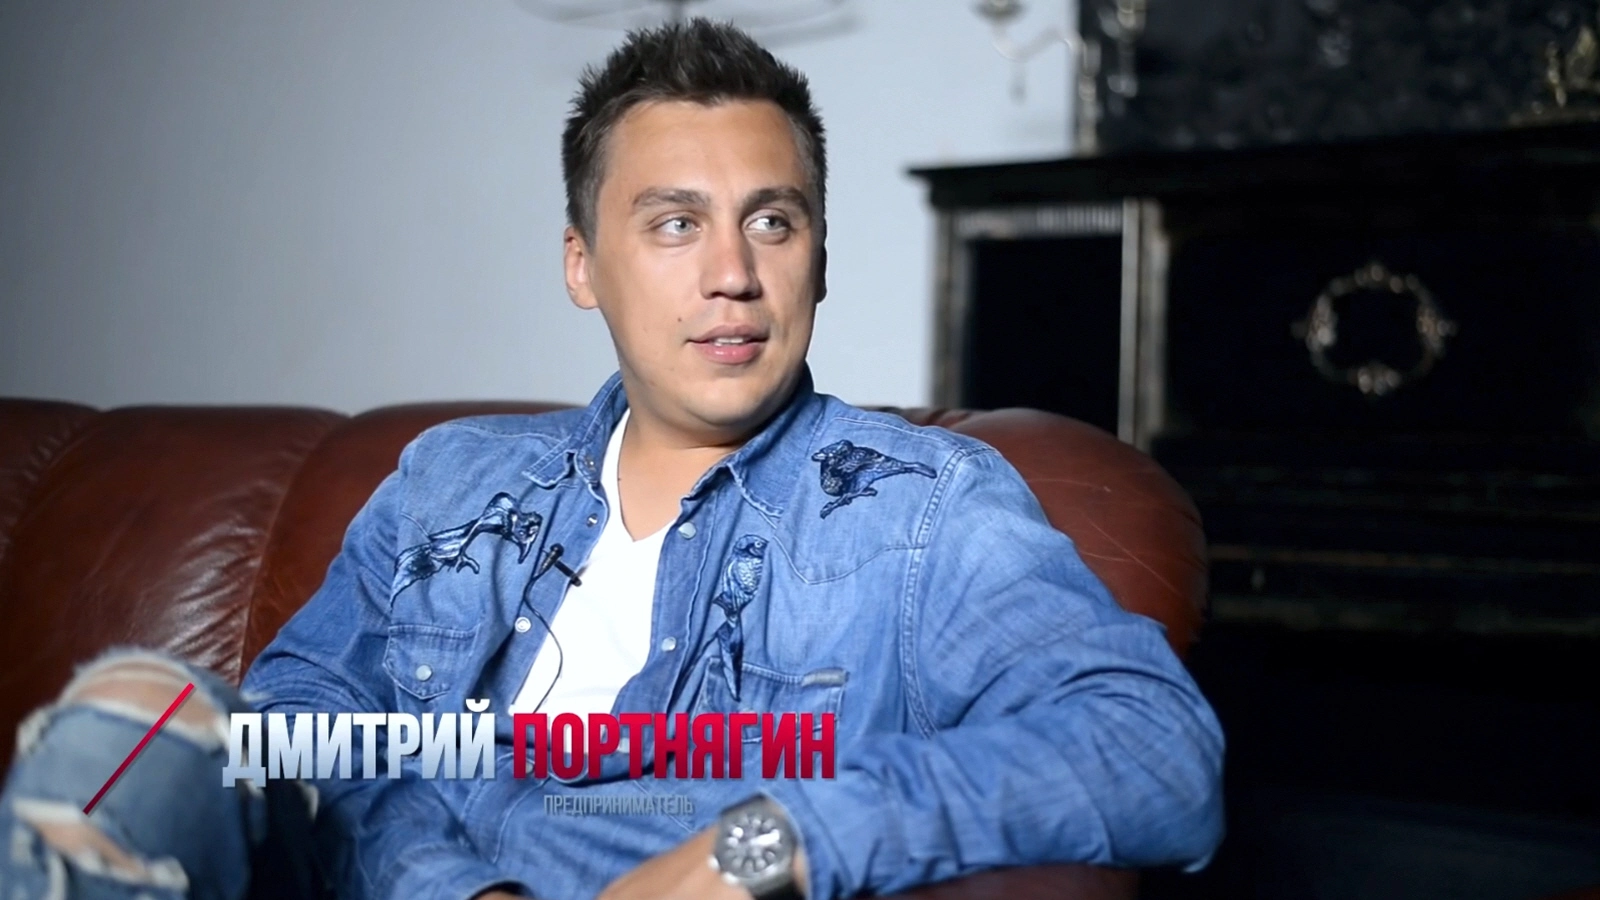 Дмитрий Портнягин - предприниматель и видеоблогер